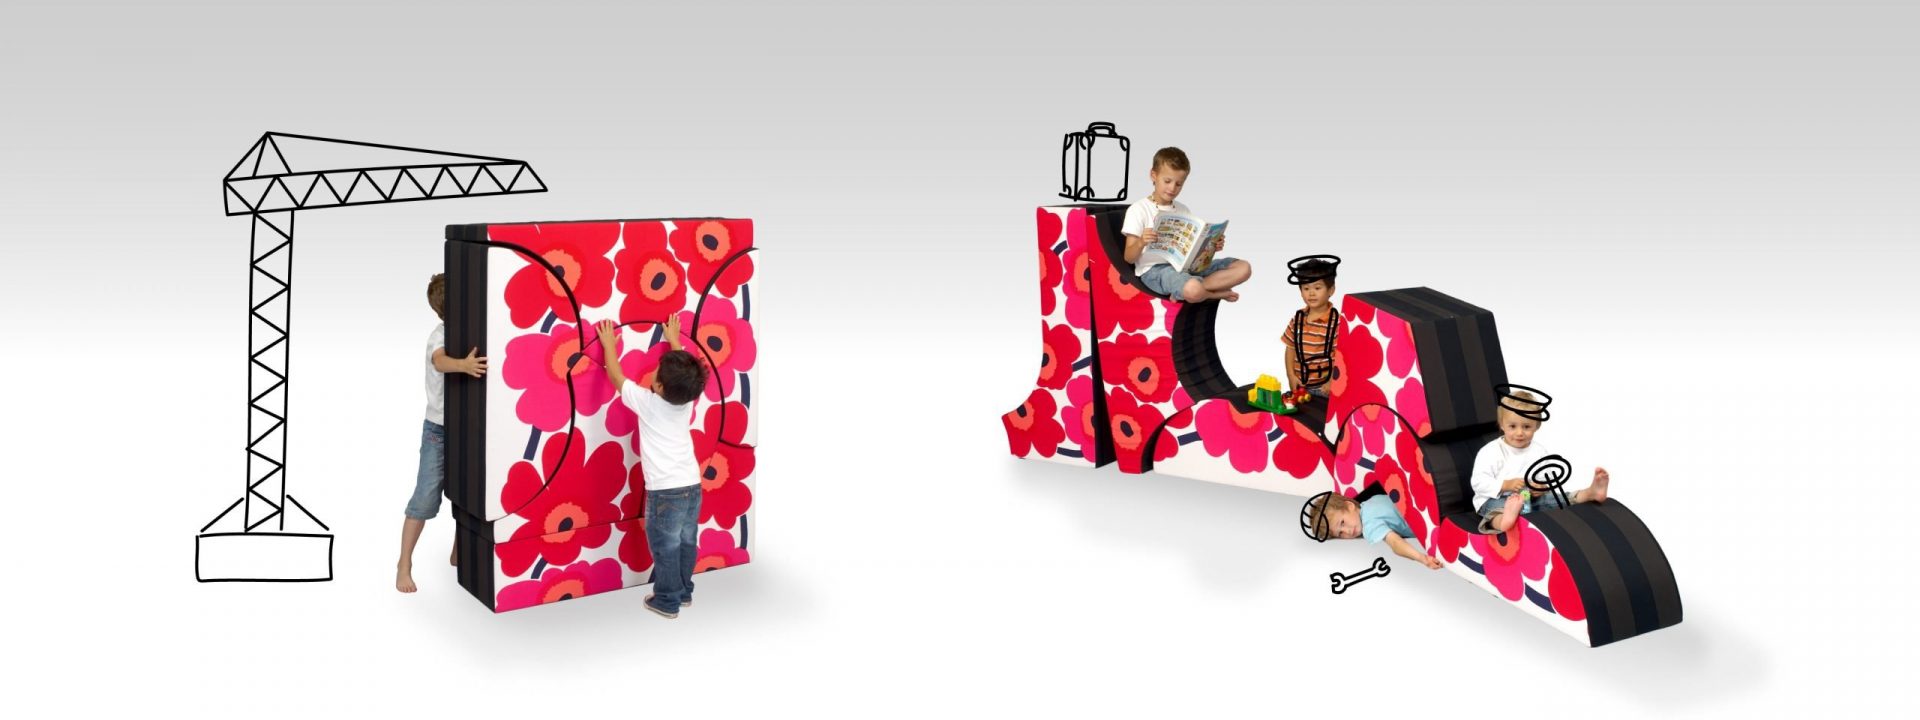 Playzzle Kindermöbel für Abenteuer und Spaß Möbeldesign CAD Konstruktion 3D Animation Büro für Industriedesign Germany Duisburg